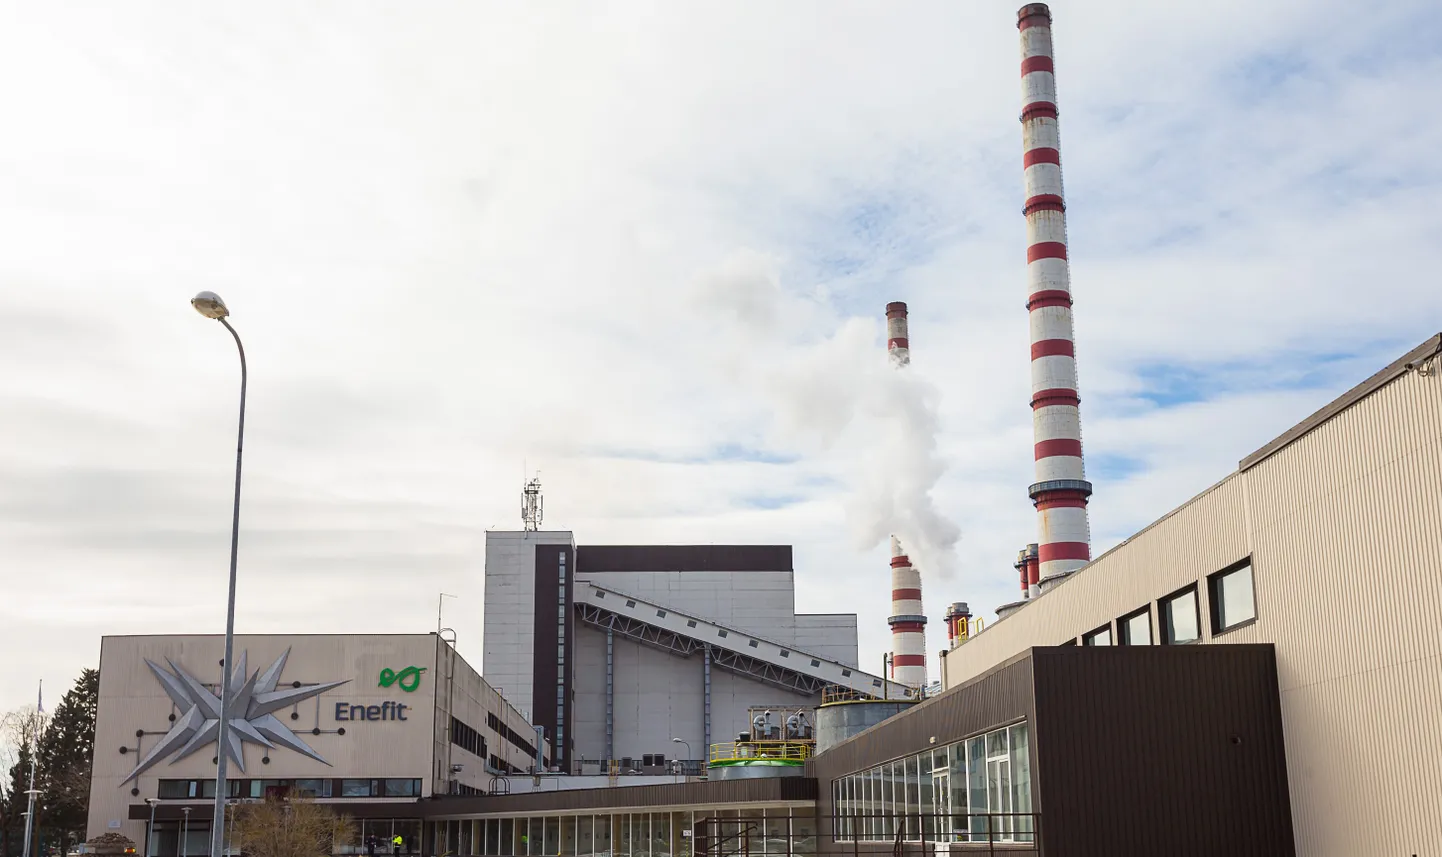 Эстонская электростанция, которая должна обеспечивать надежность снабжения Эстонии электроэнергией, в этом году только несла убытки, так как возможности заработать прибыль на рынке не возникло.